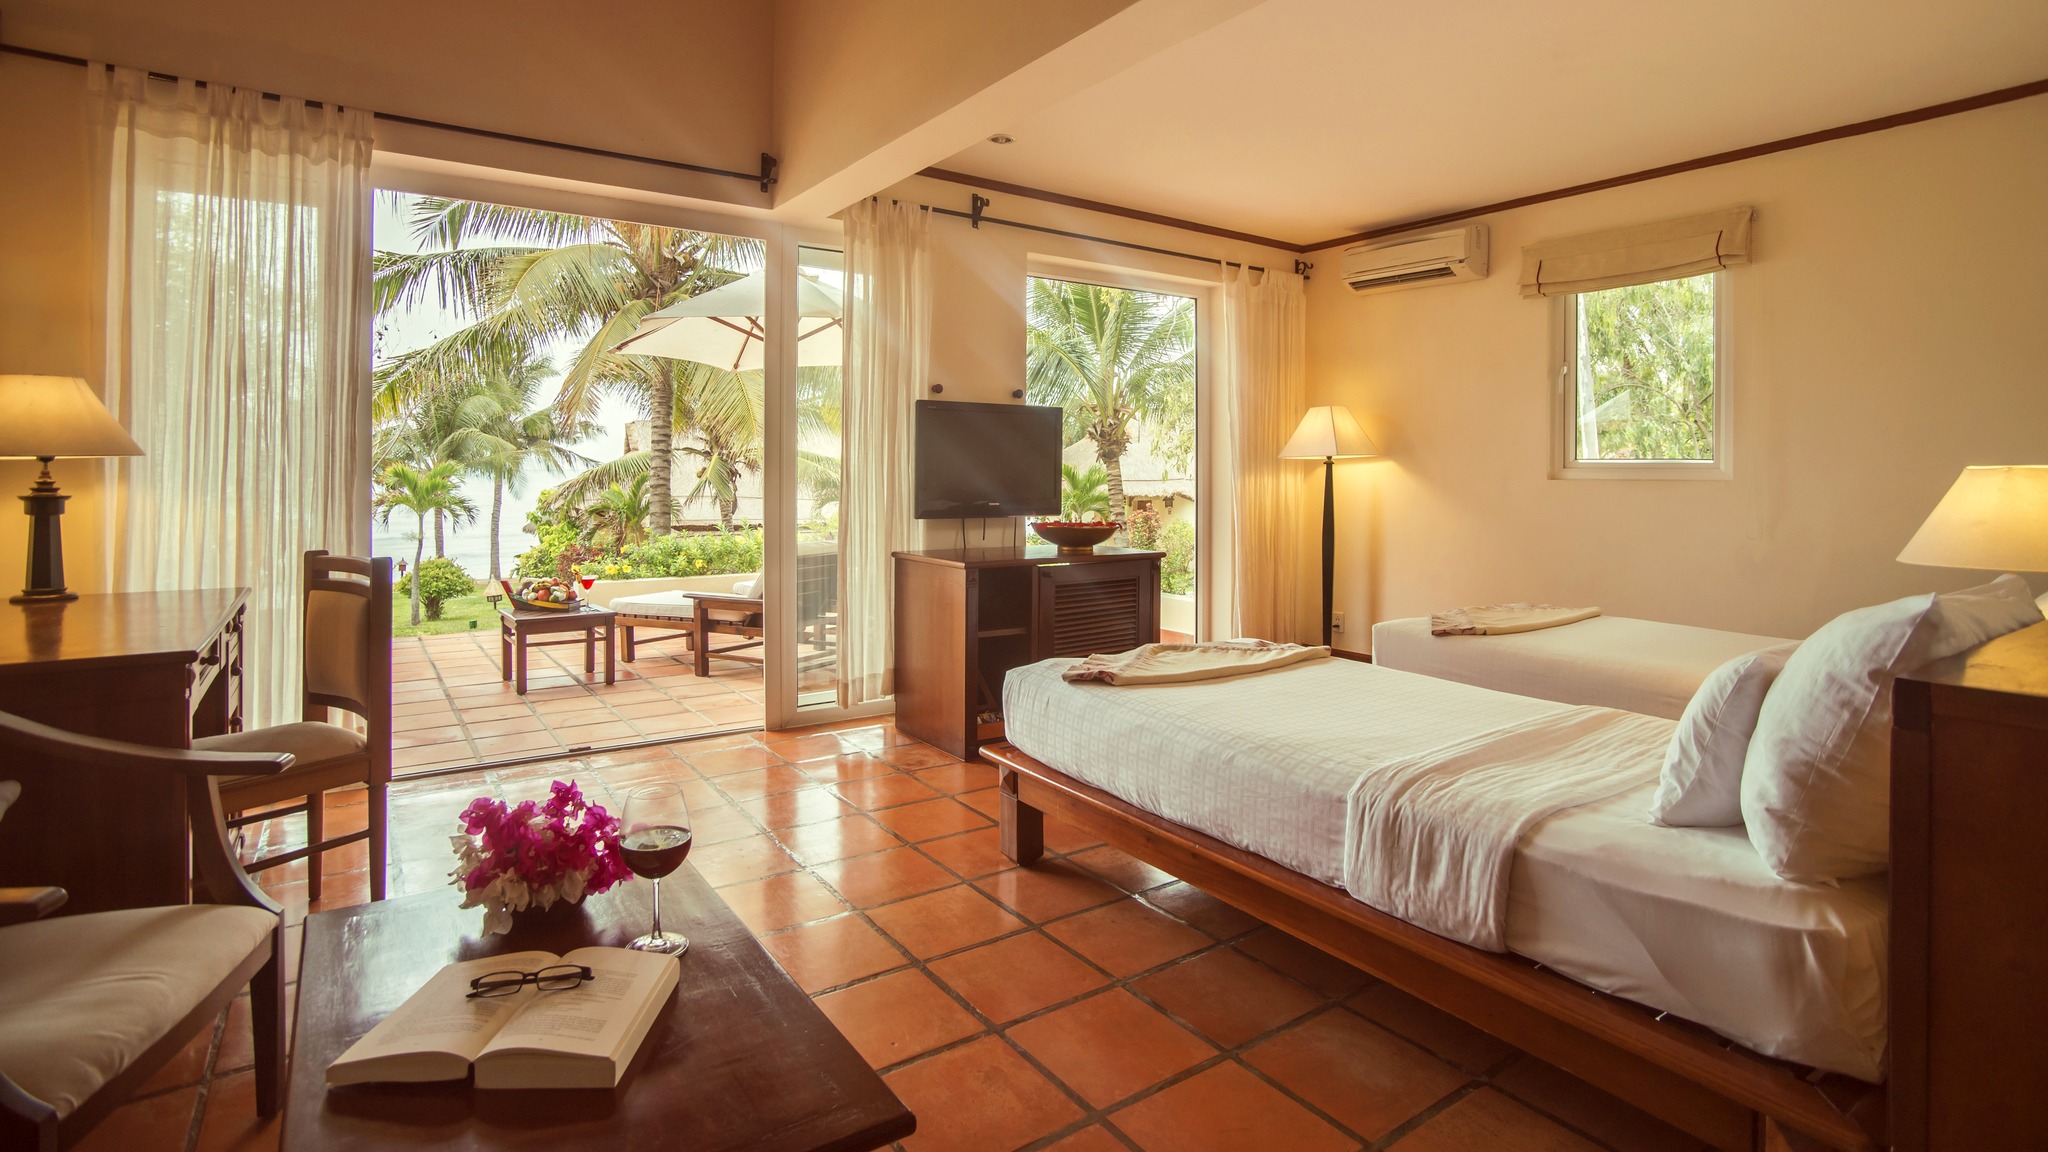 Victoria Phan Thiet Beach Resort & Spa - Một chút nhẹ nhàng nghe sóng vỗ